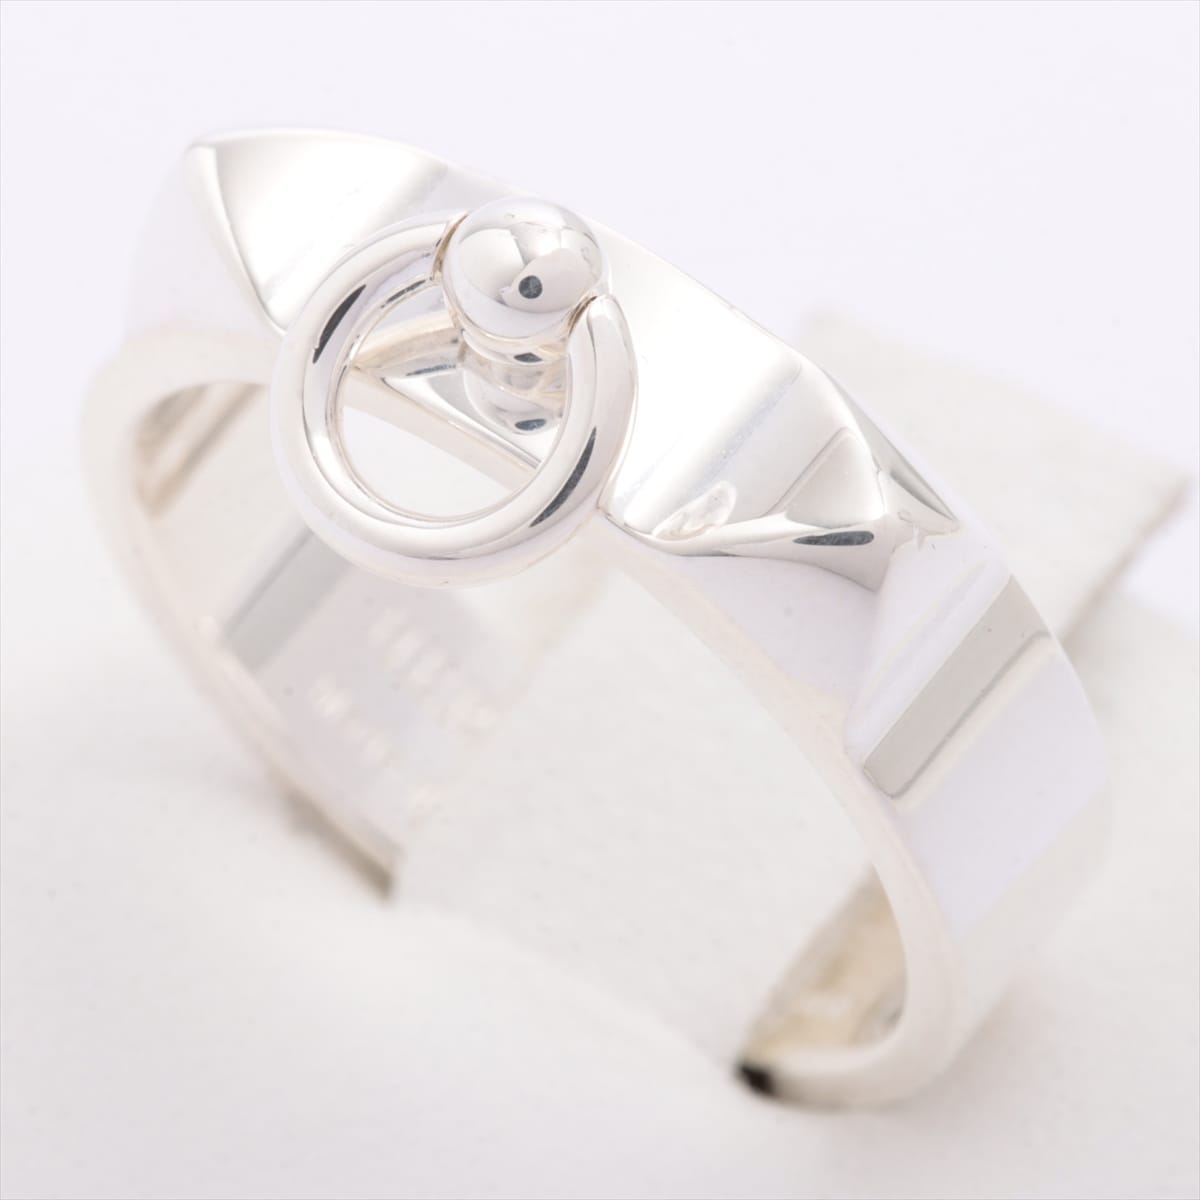 Hermès Collier de Chien rings 925 5.0g Silver